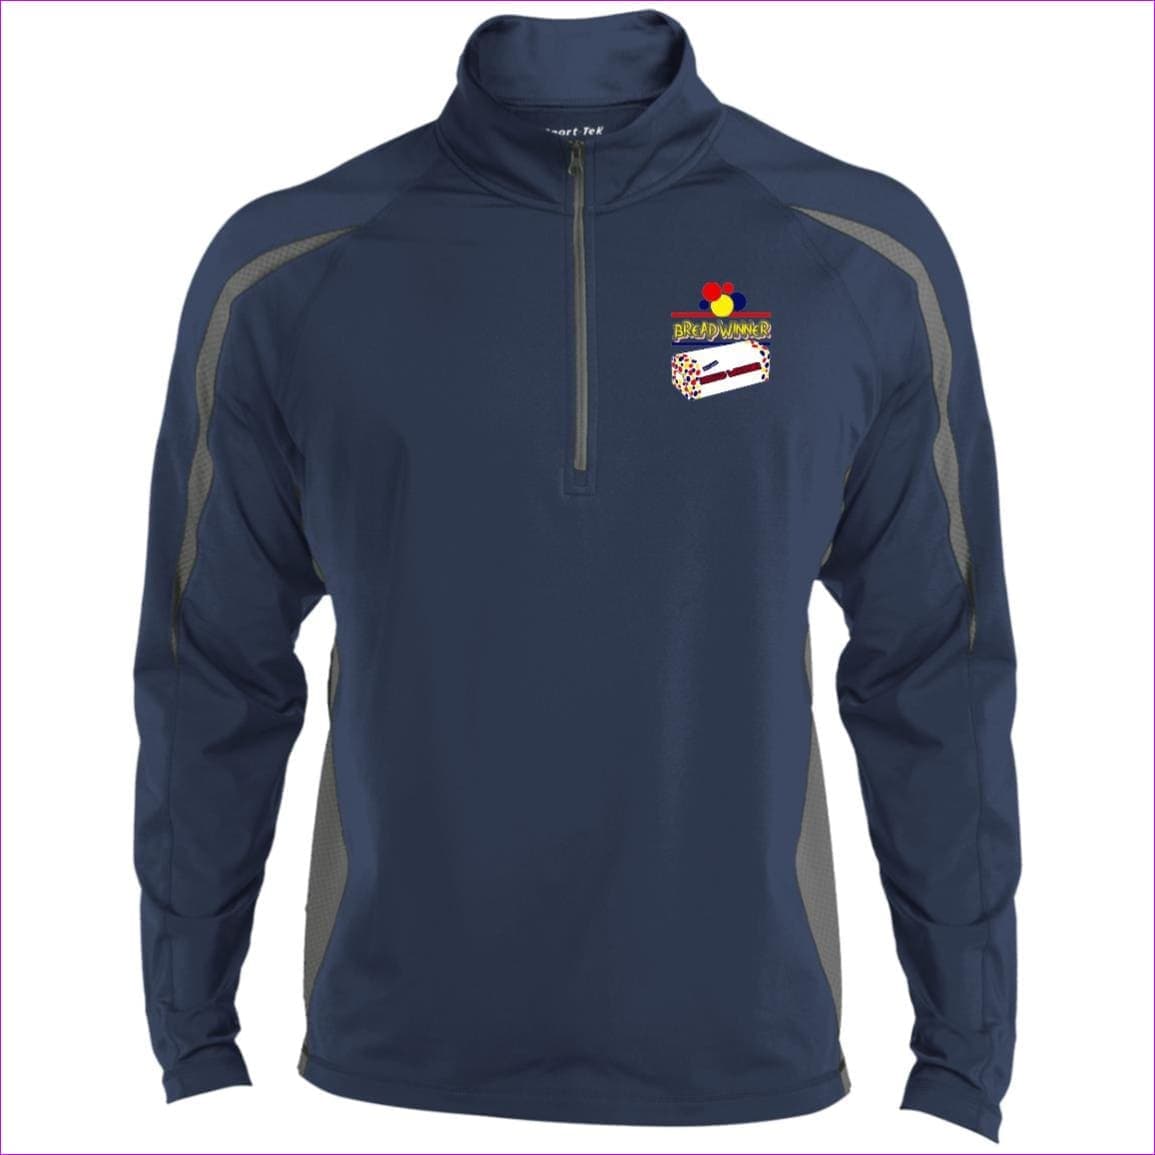 True Navy/Charcoal Grey Bread Winner Men's Sport Wicking Colorblock 1/2 Zip Sweatshirt - men's sweatshirt at TFC&H Co.